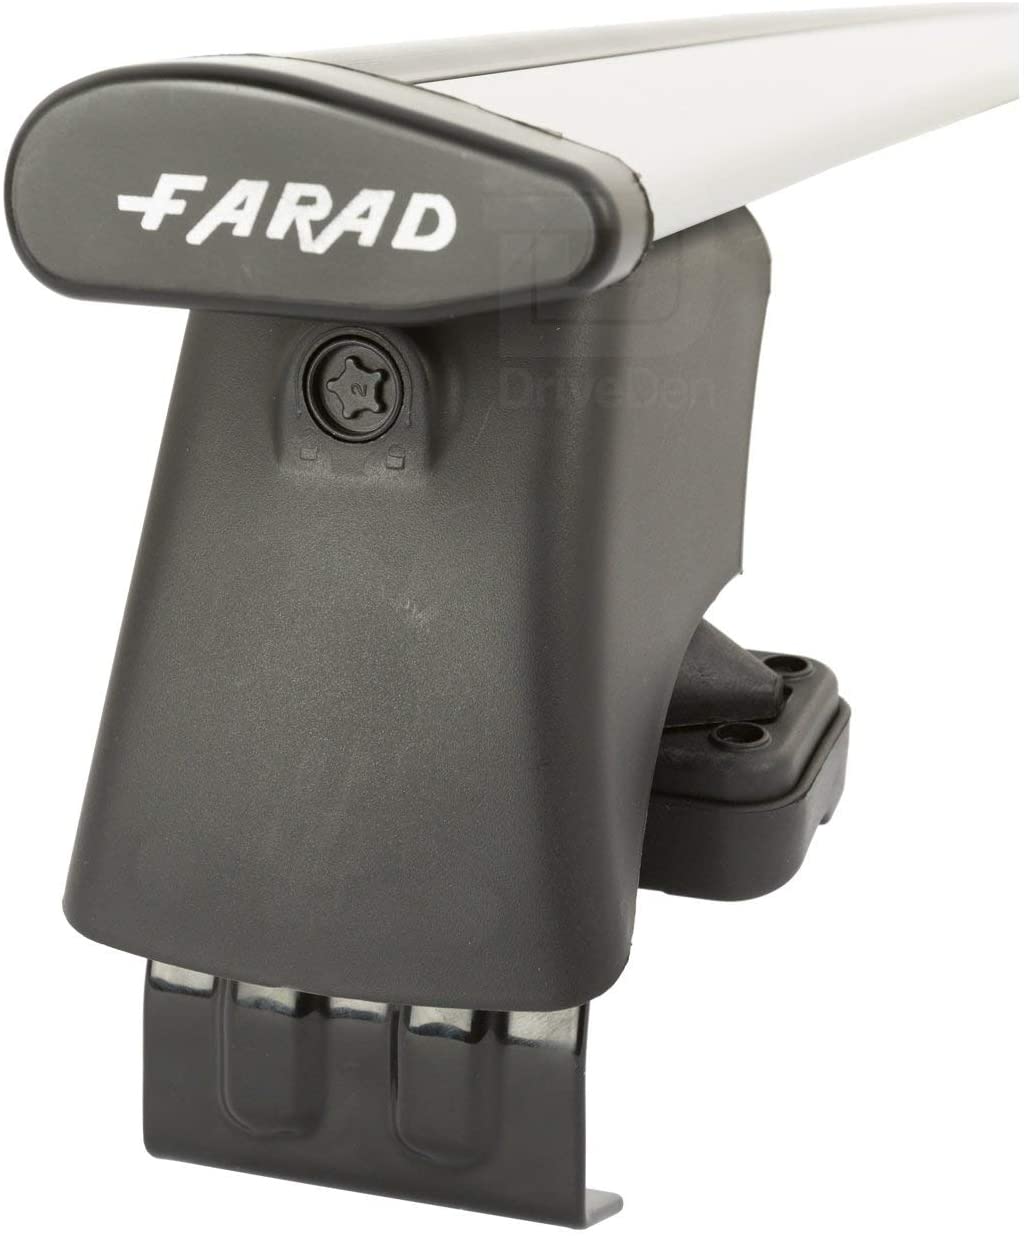 FARAD-Kit H2 per barre portatutto - Seat Cordoba 2003-2009 (senza corrimano)